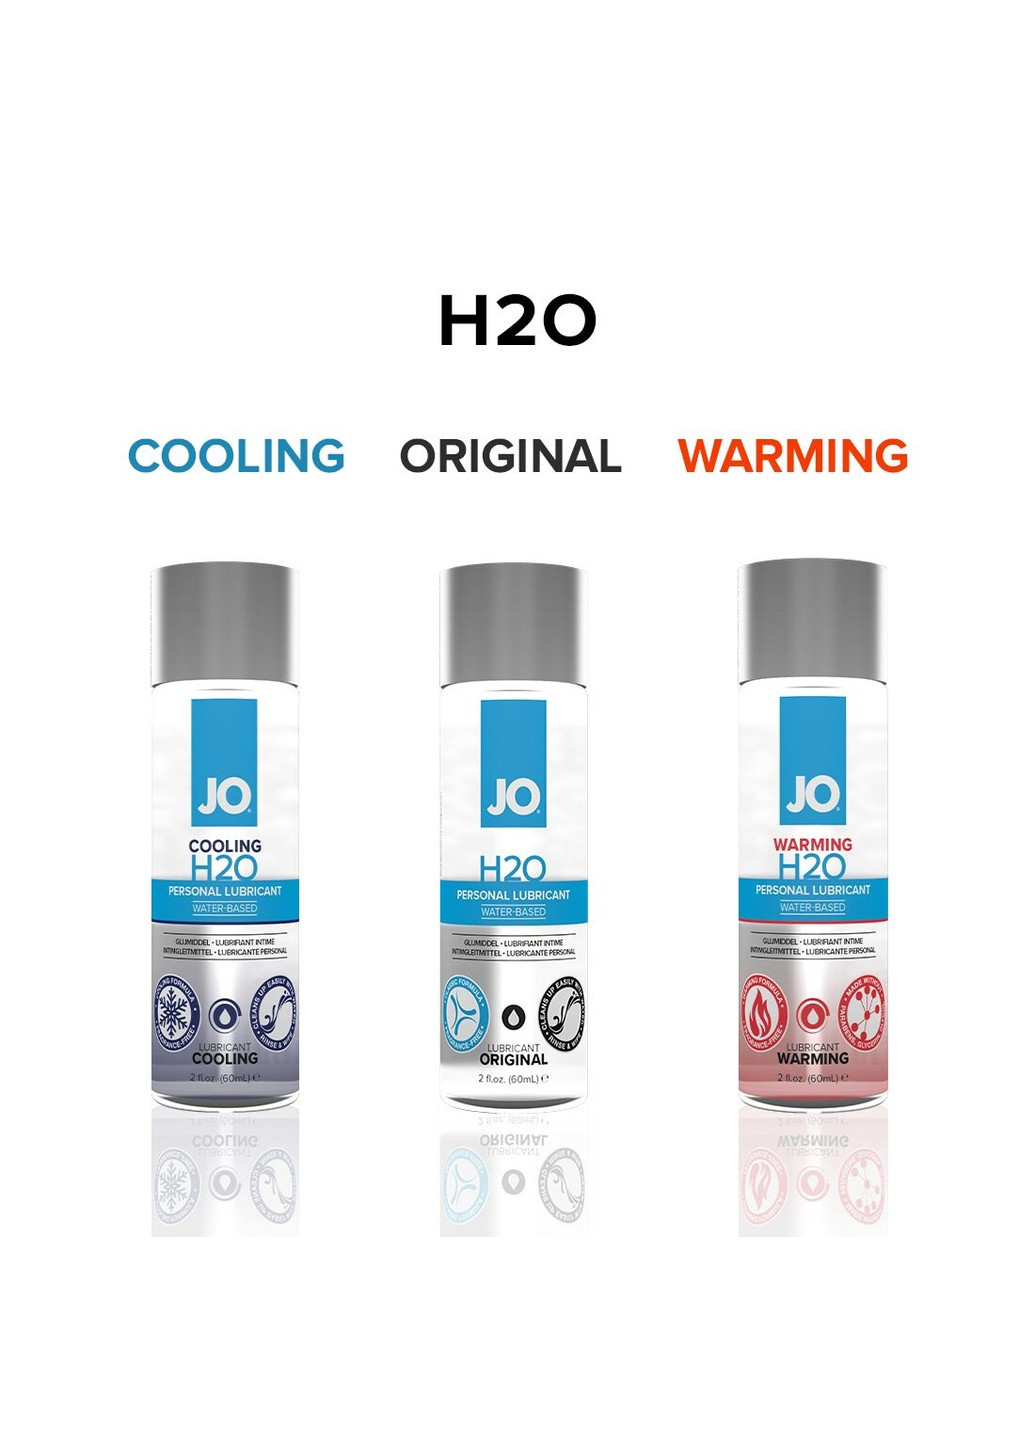 Змазка на водній основі H2O ORIGINAL (120 мл) оліїста і гладенька, рослинний гліцерин System JO (257203109)